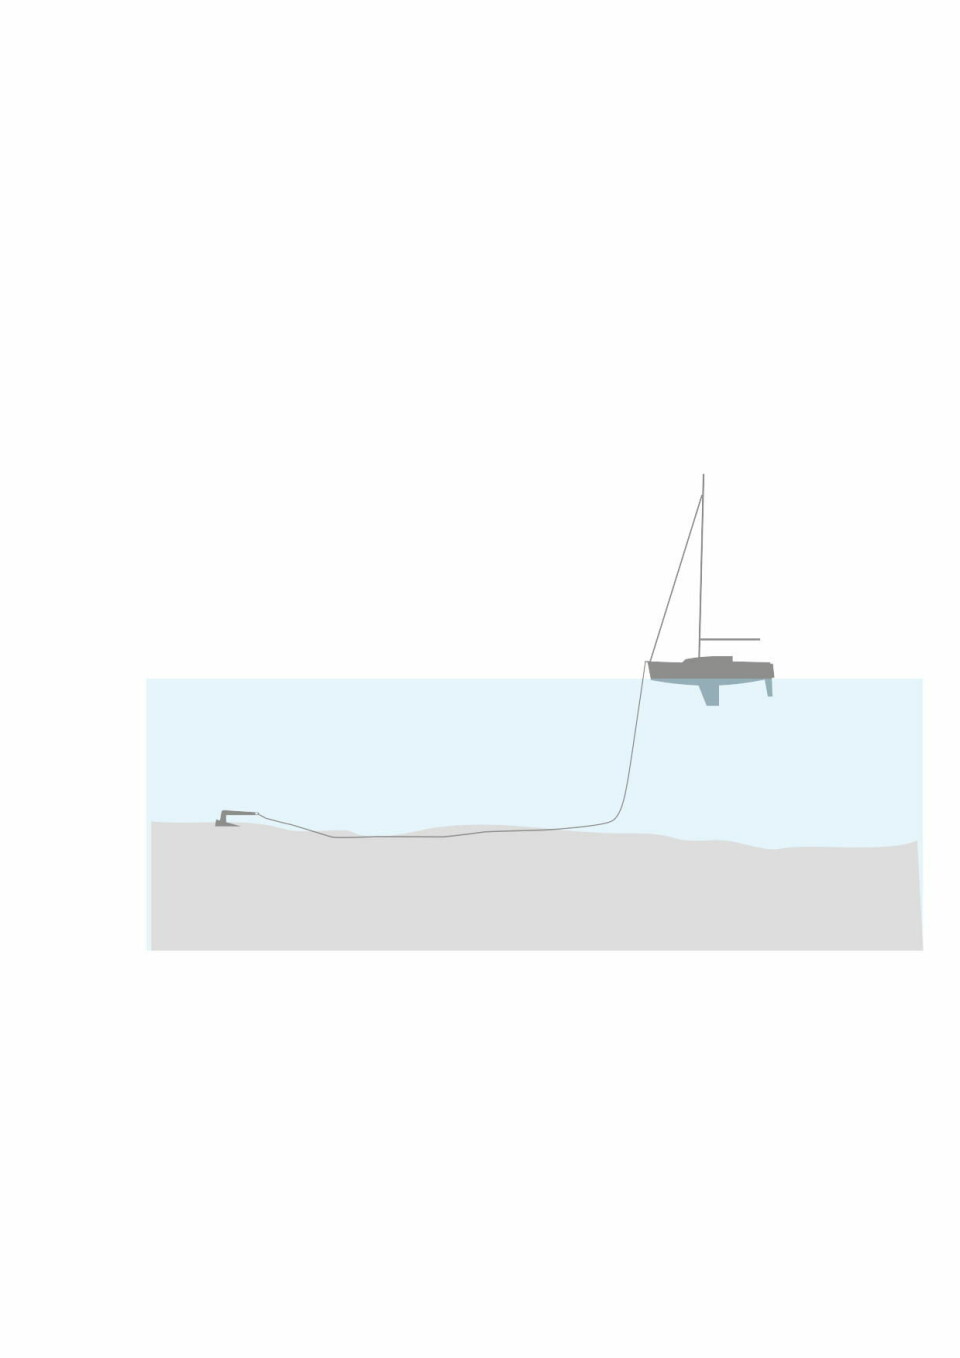 KJETTING: Du skal legge ut minimum tre ganger så lang kjetting/ankerline, som dybden, men helst fem ganger. Sjekk at båten har plass til å svinge om vinden skulle snu.